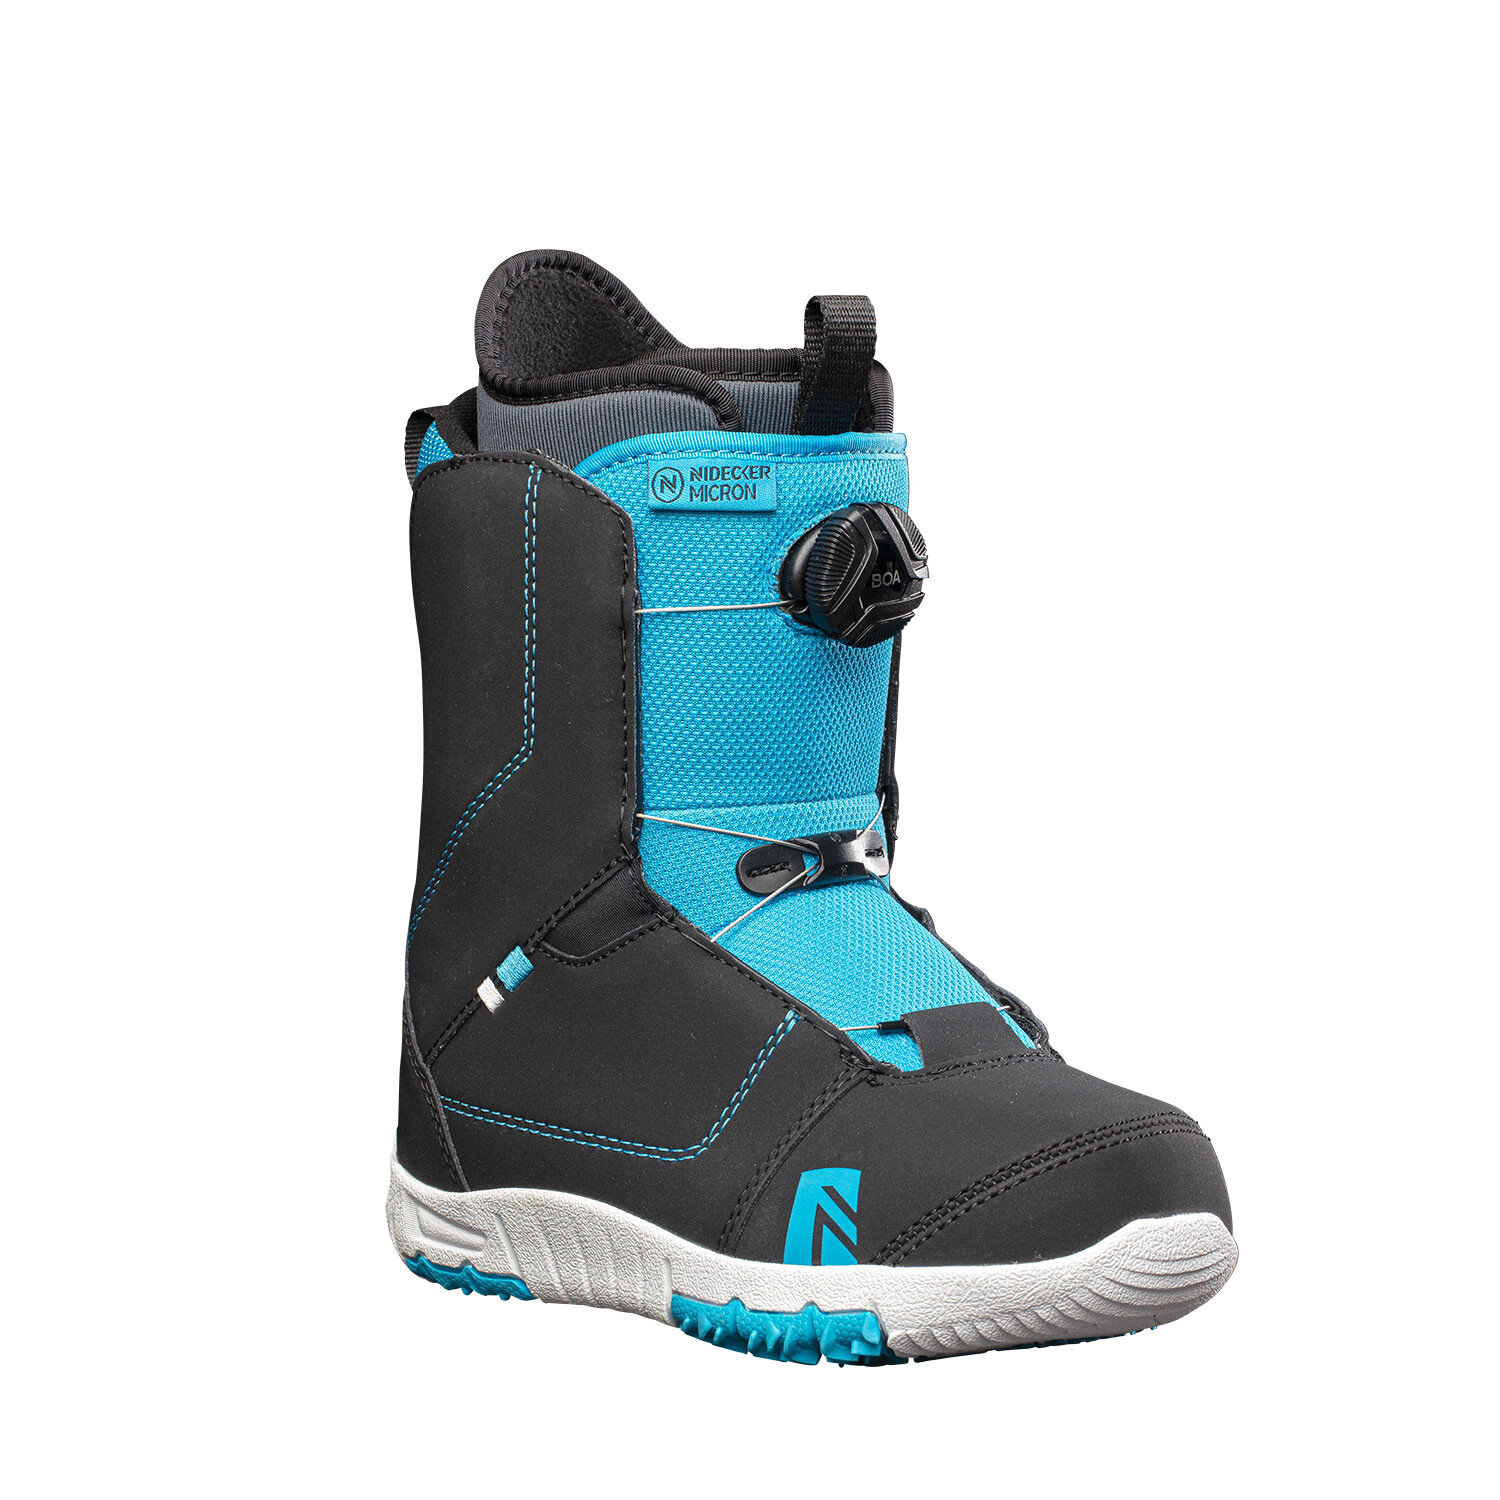 Ботинки для сноуборда Nidecker Micron Boa Black год 2021 размер 35.5